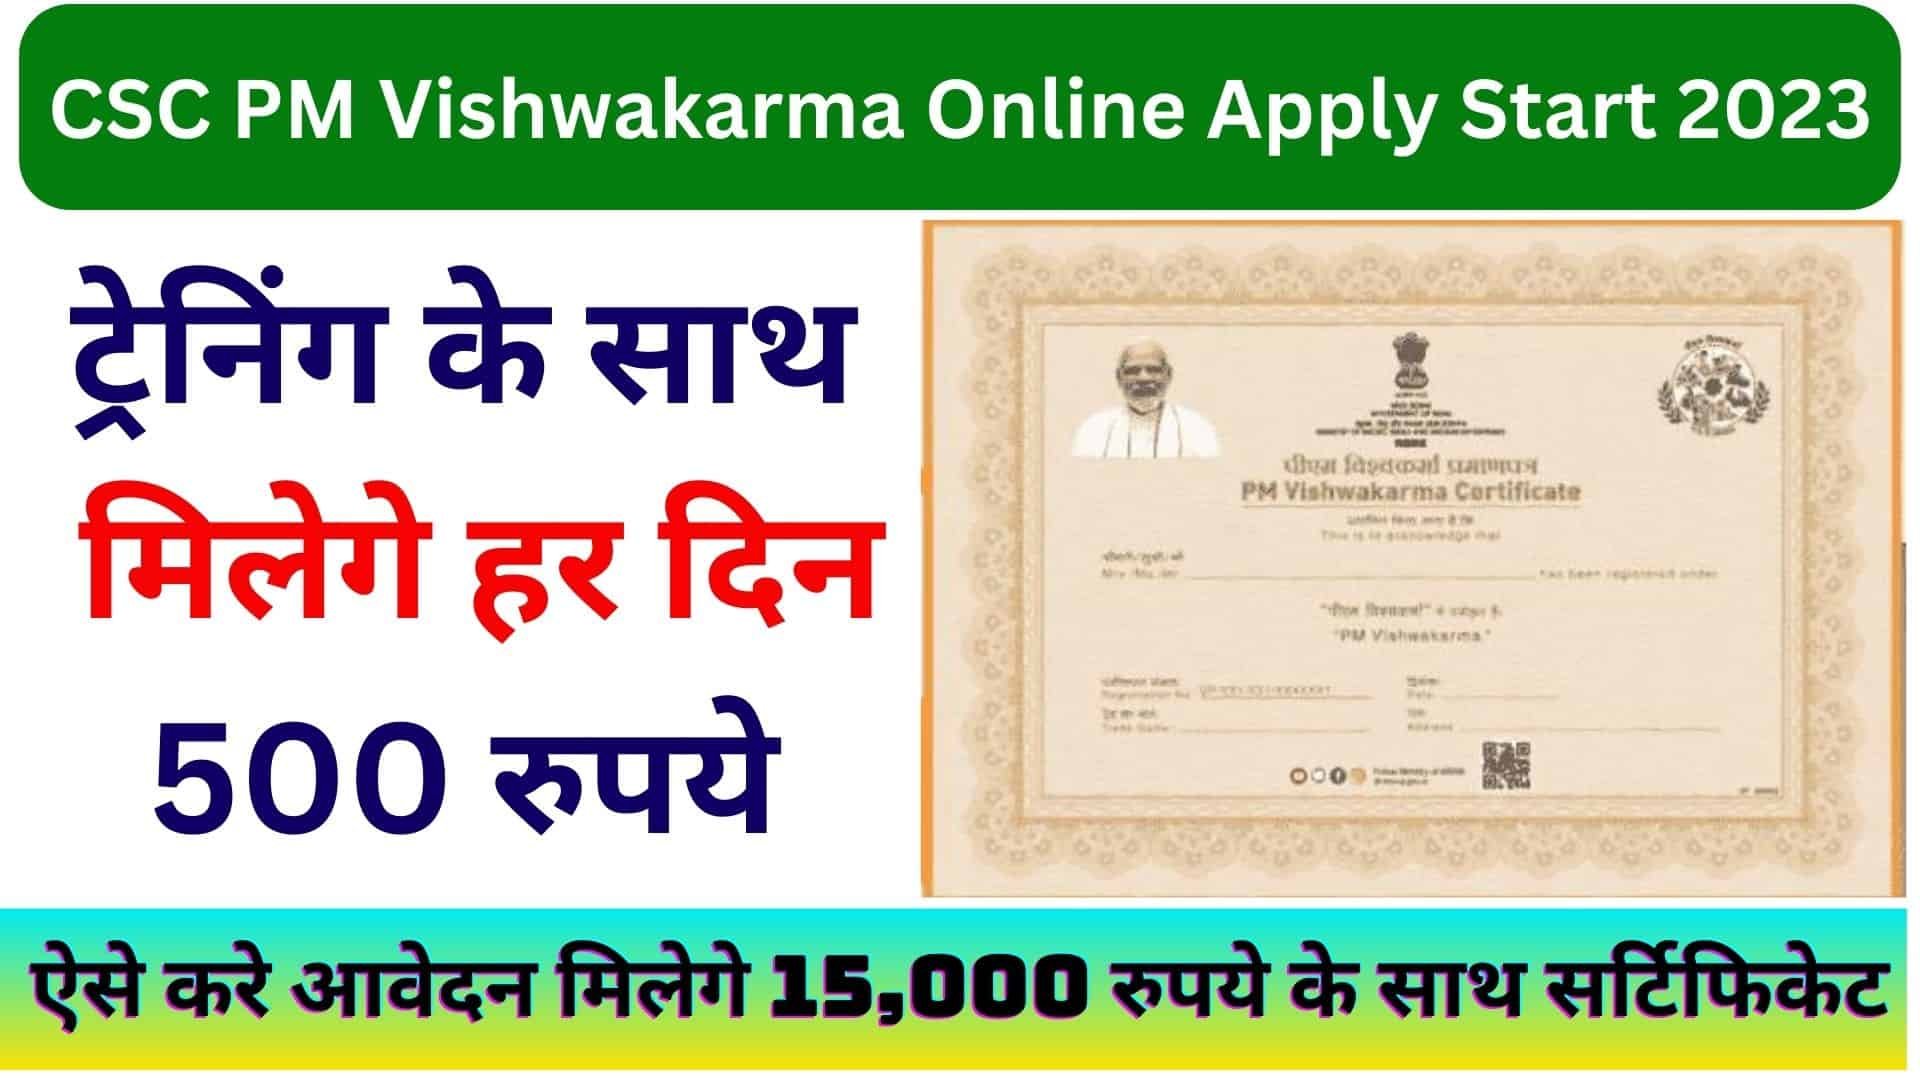 CSC PM Vishwakarma Online Apply Start 2023 : ऐसे करे आवेदन मिलेगे 15,000 रुपये के साथ सर्टिफिकेट